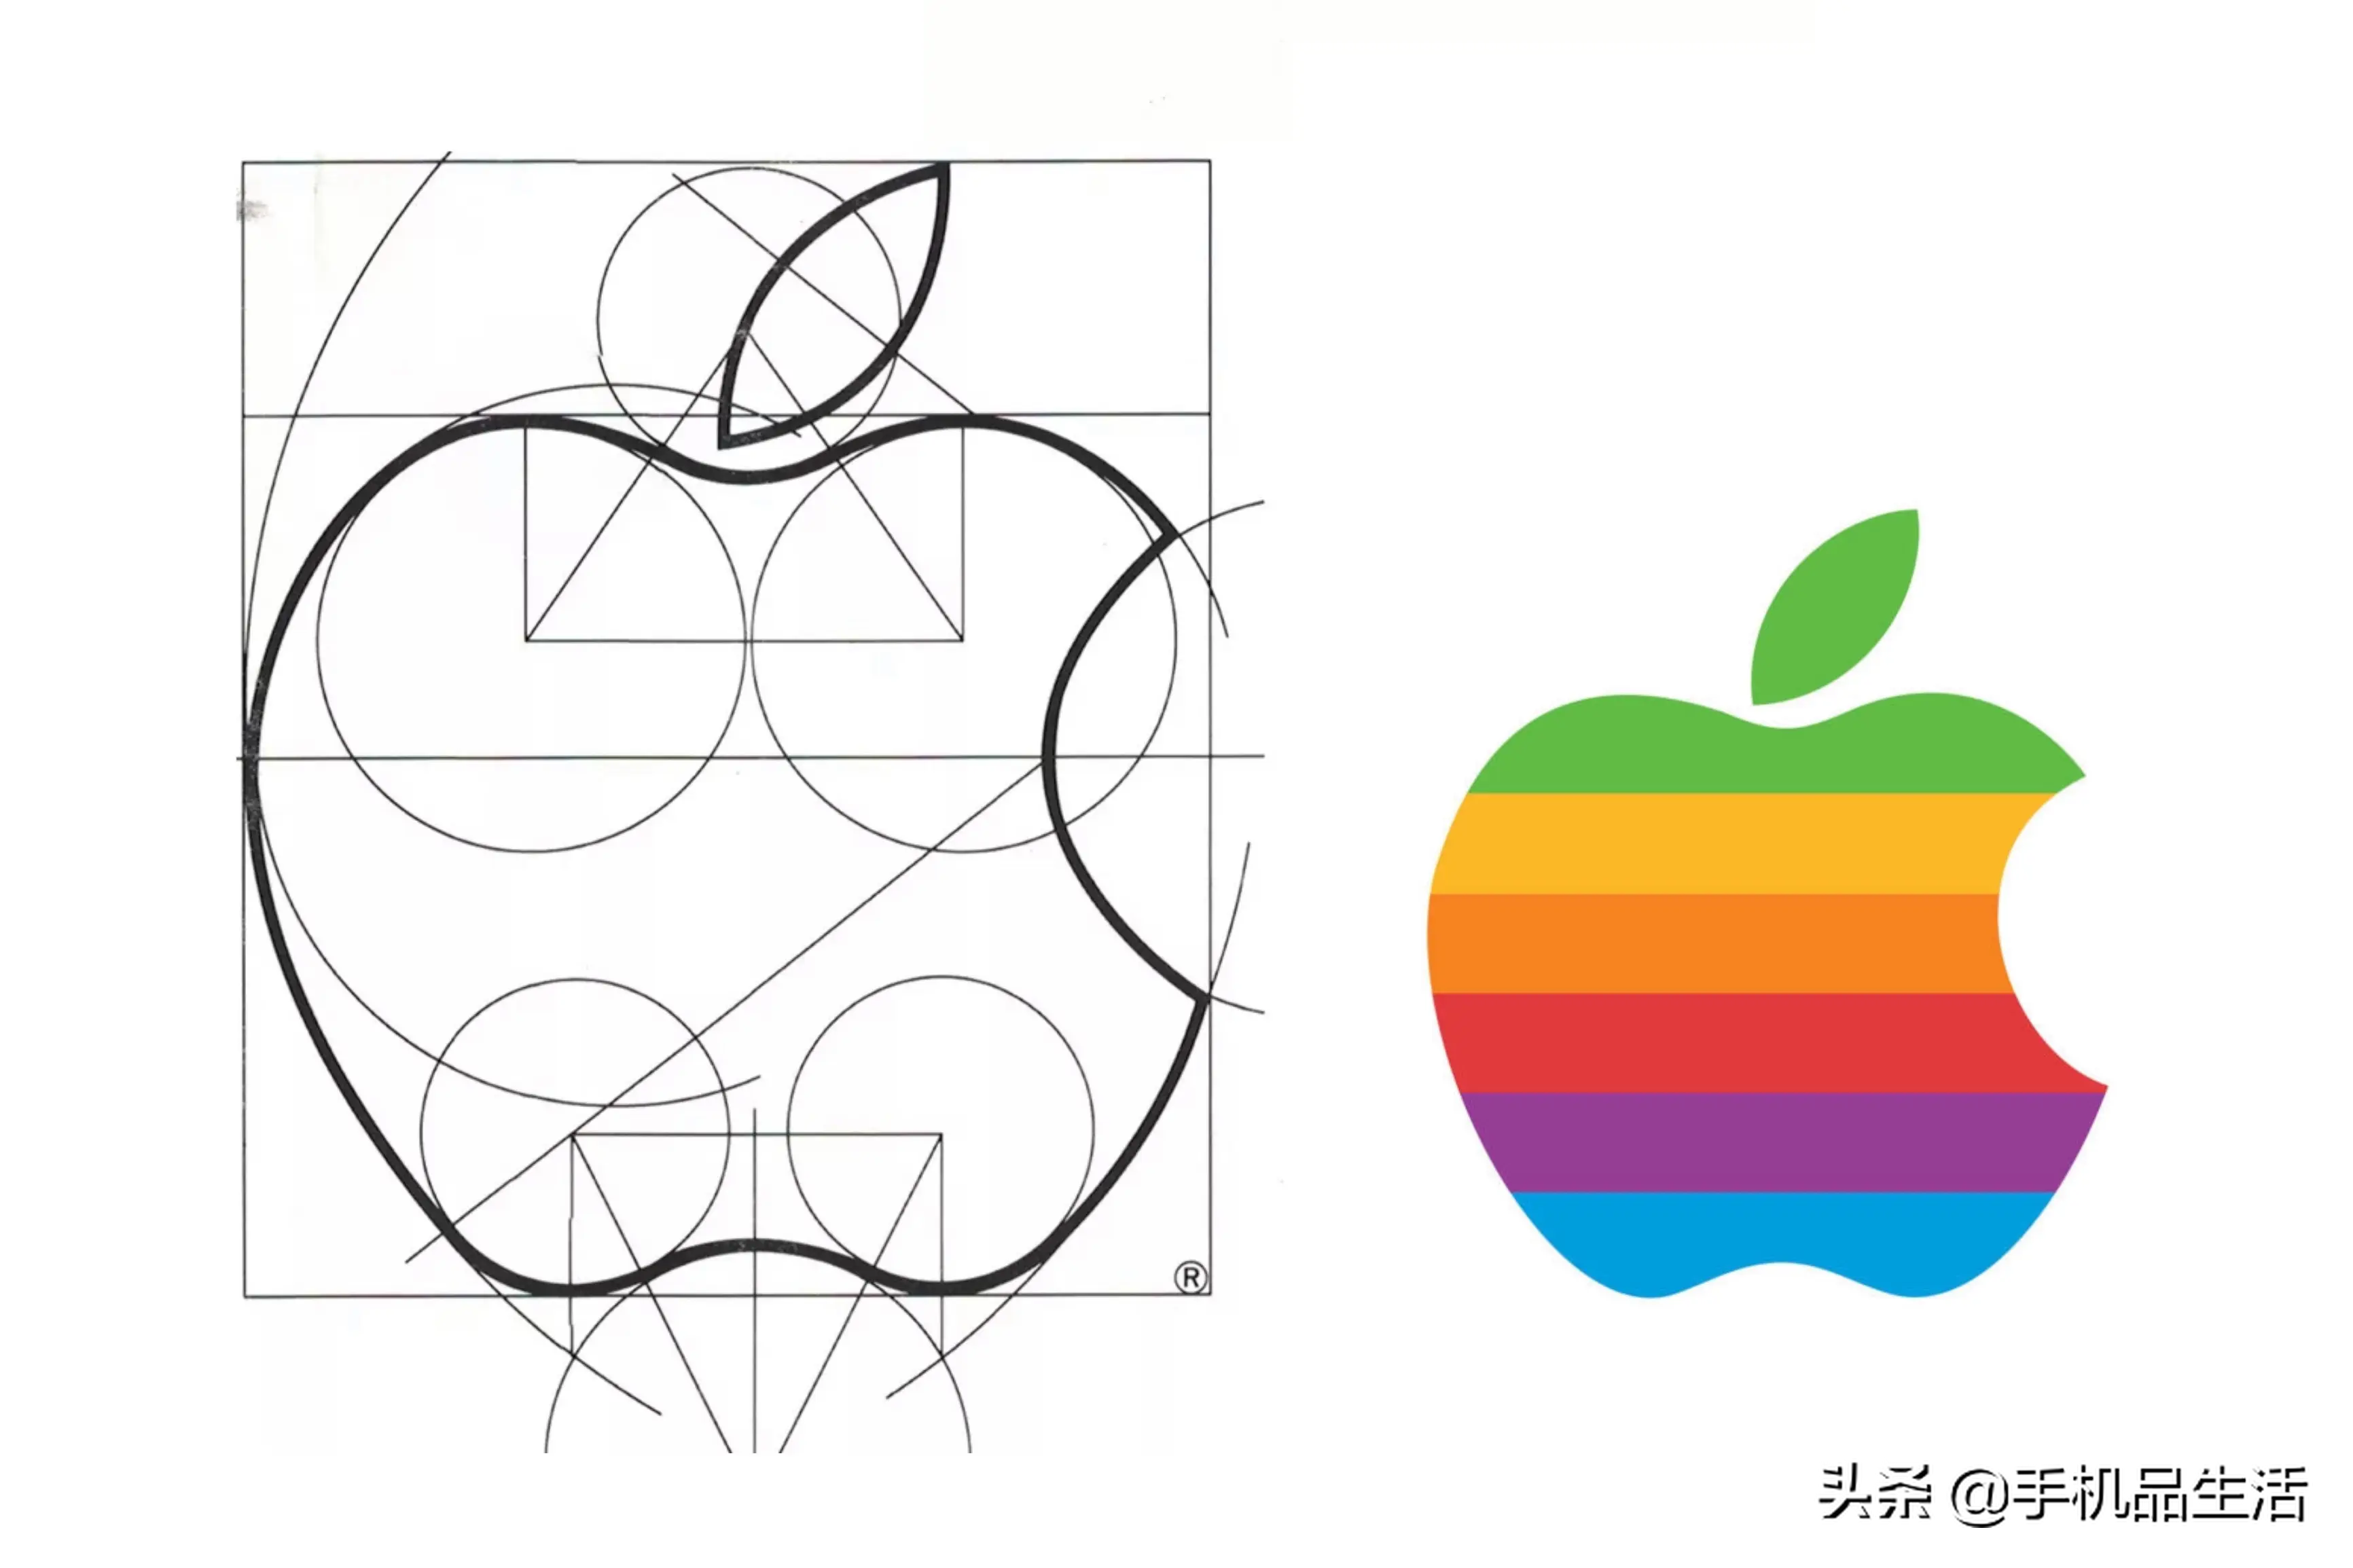 这个苹果 logo 是用布尔运算绘制的,可见当初的设计师有多么认真,这代